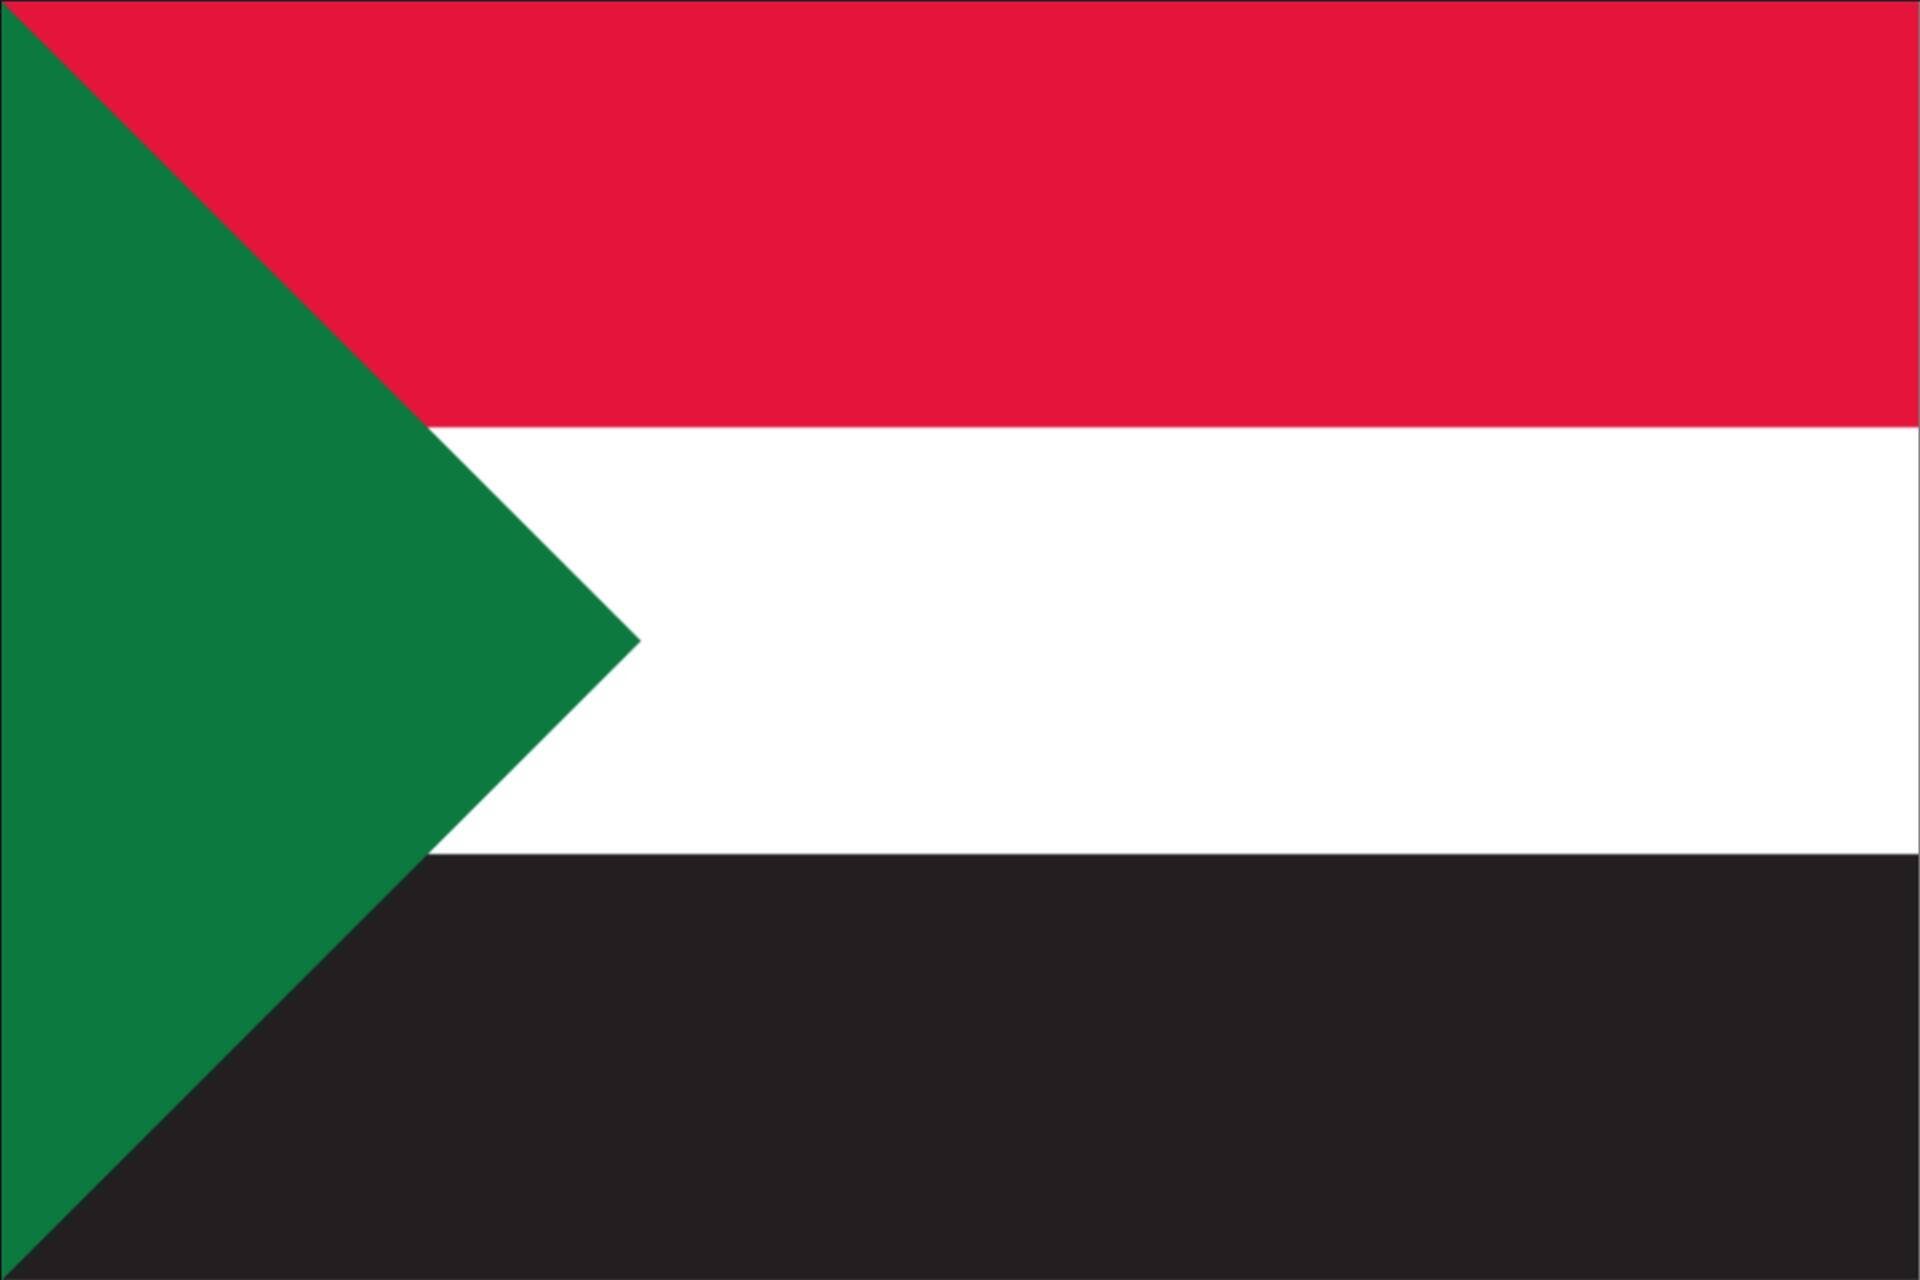 Flagge g/m² 80 flaggenmeer Sudan